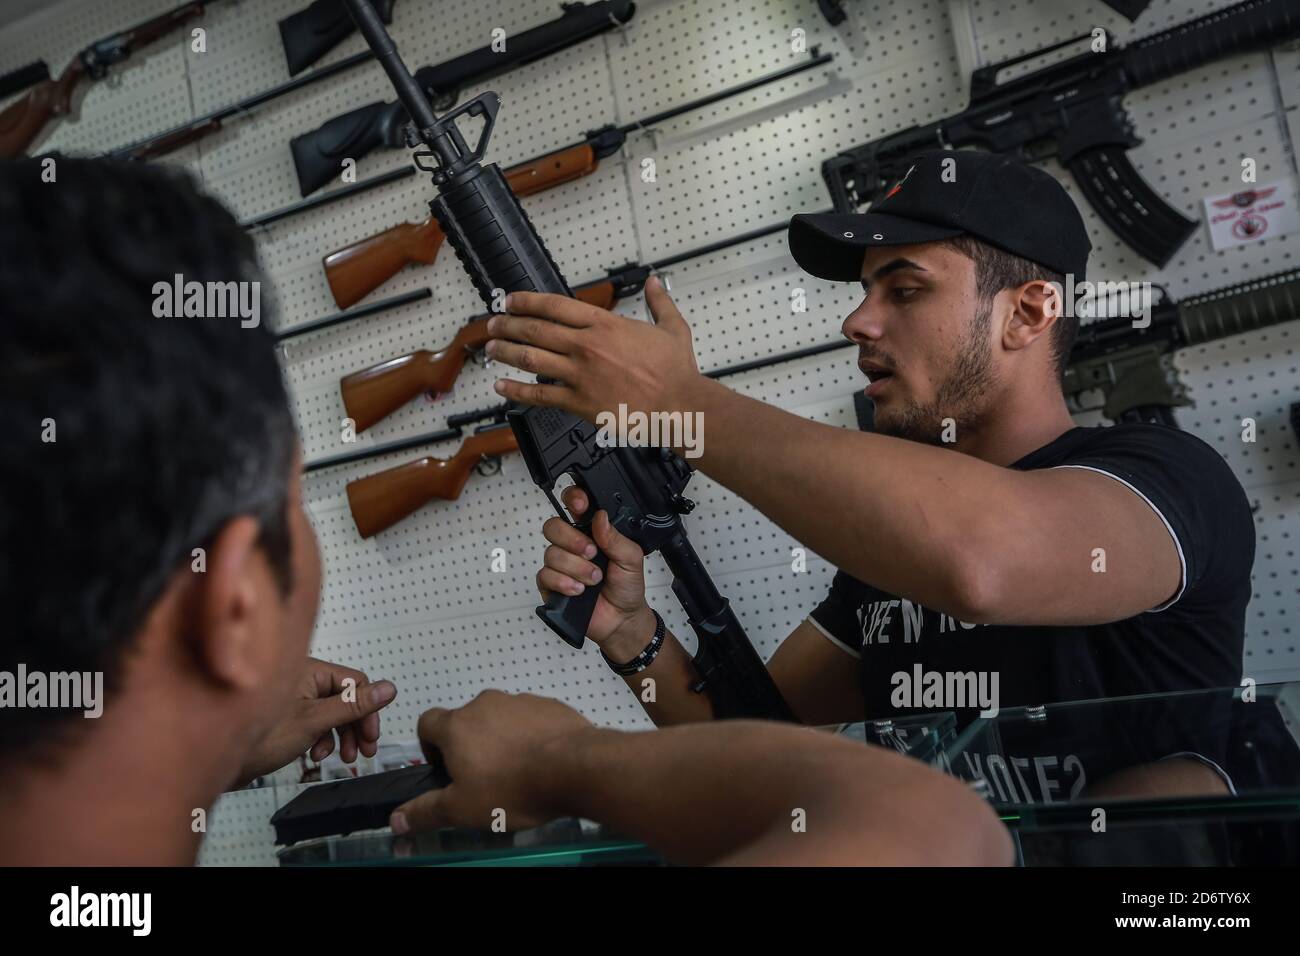 Najaf, Irak. 19 de octubre de 2020. Un distribuidor de armas (R) demuestra el mecanismo de un rifle de estilo AR-15 a un cliente en una tienda que vende armas de fuego y municiones, donde se permite a las personas comprar armas autorizadas después de emitir los permisos necesarios de las autoridades de seguridad. Crédito: Ameer al Mohammedaw/dpa/Alamy Live News Foto de stock